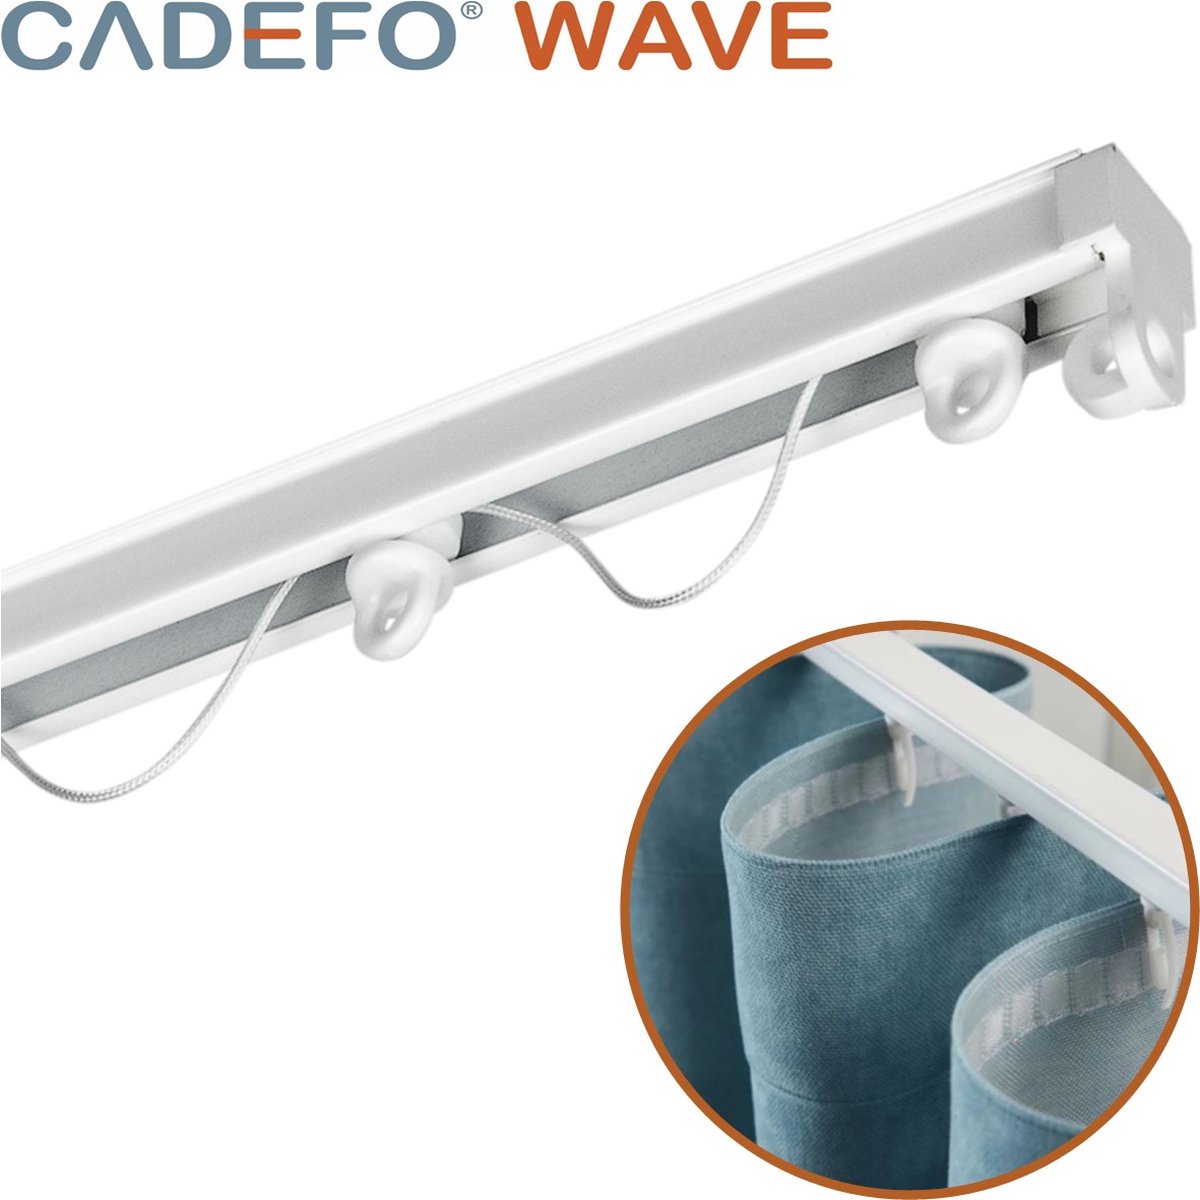 CADEFO WAVE (201 - 250 cm) Gordijnrails - Compleet op maat! - UIT 1 STUK - Leverbaar tot 6 meter - Plafondbevestiging - Lengte 248 cm